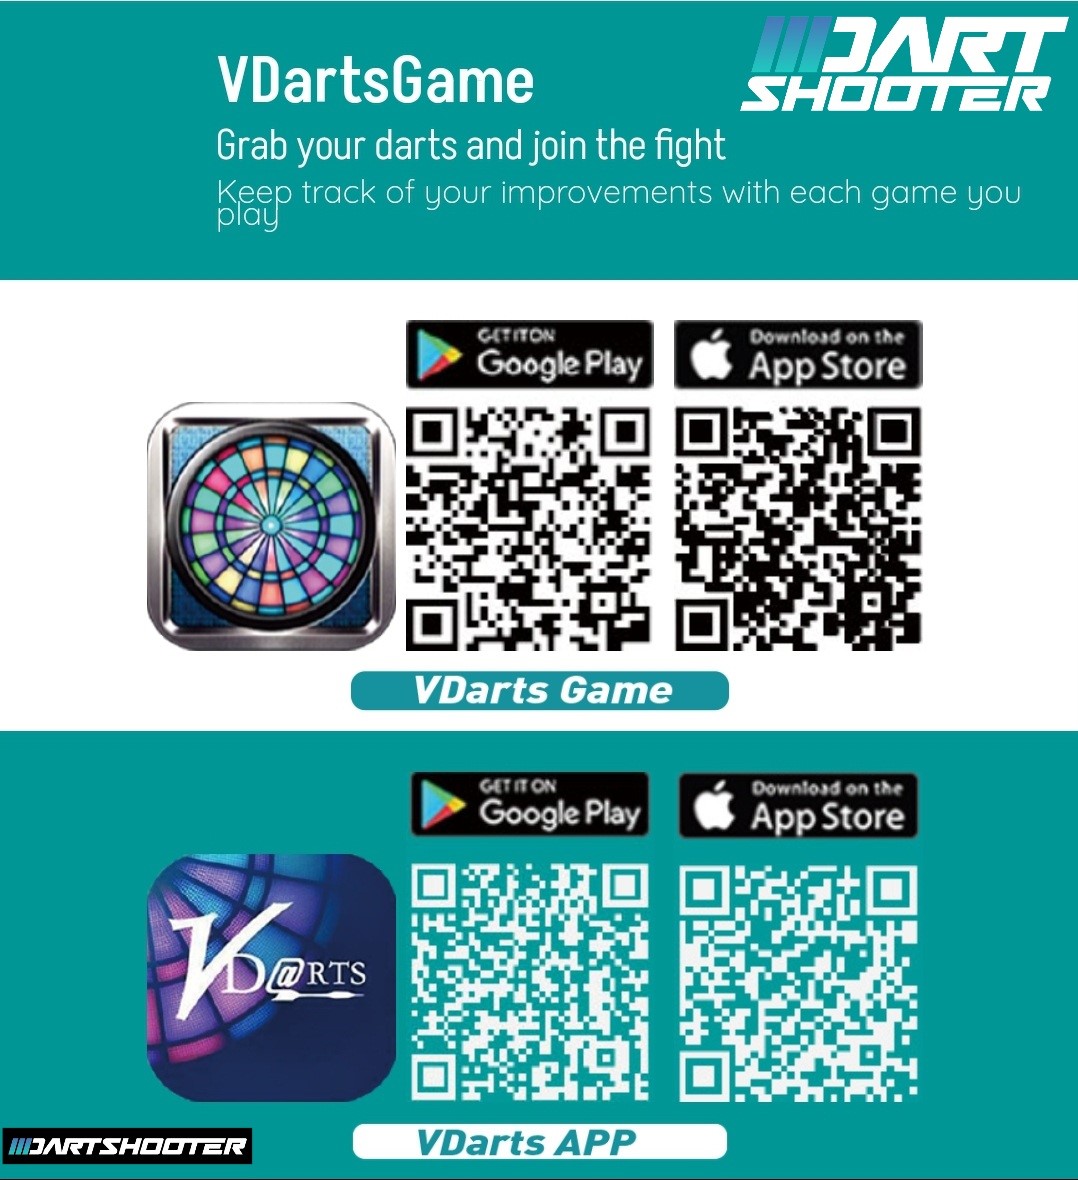 VDarts H4L Online Global Electronic Dartboard